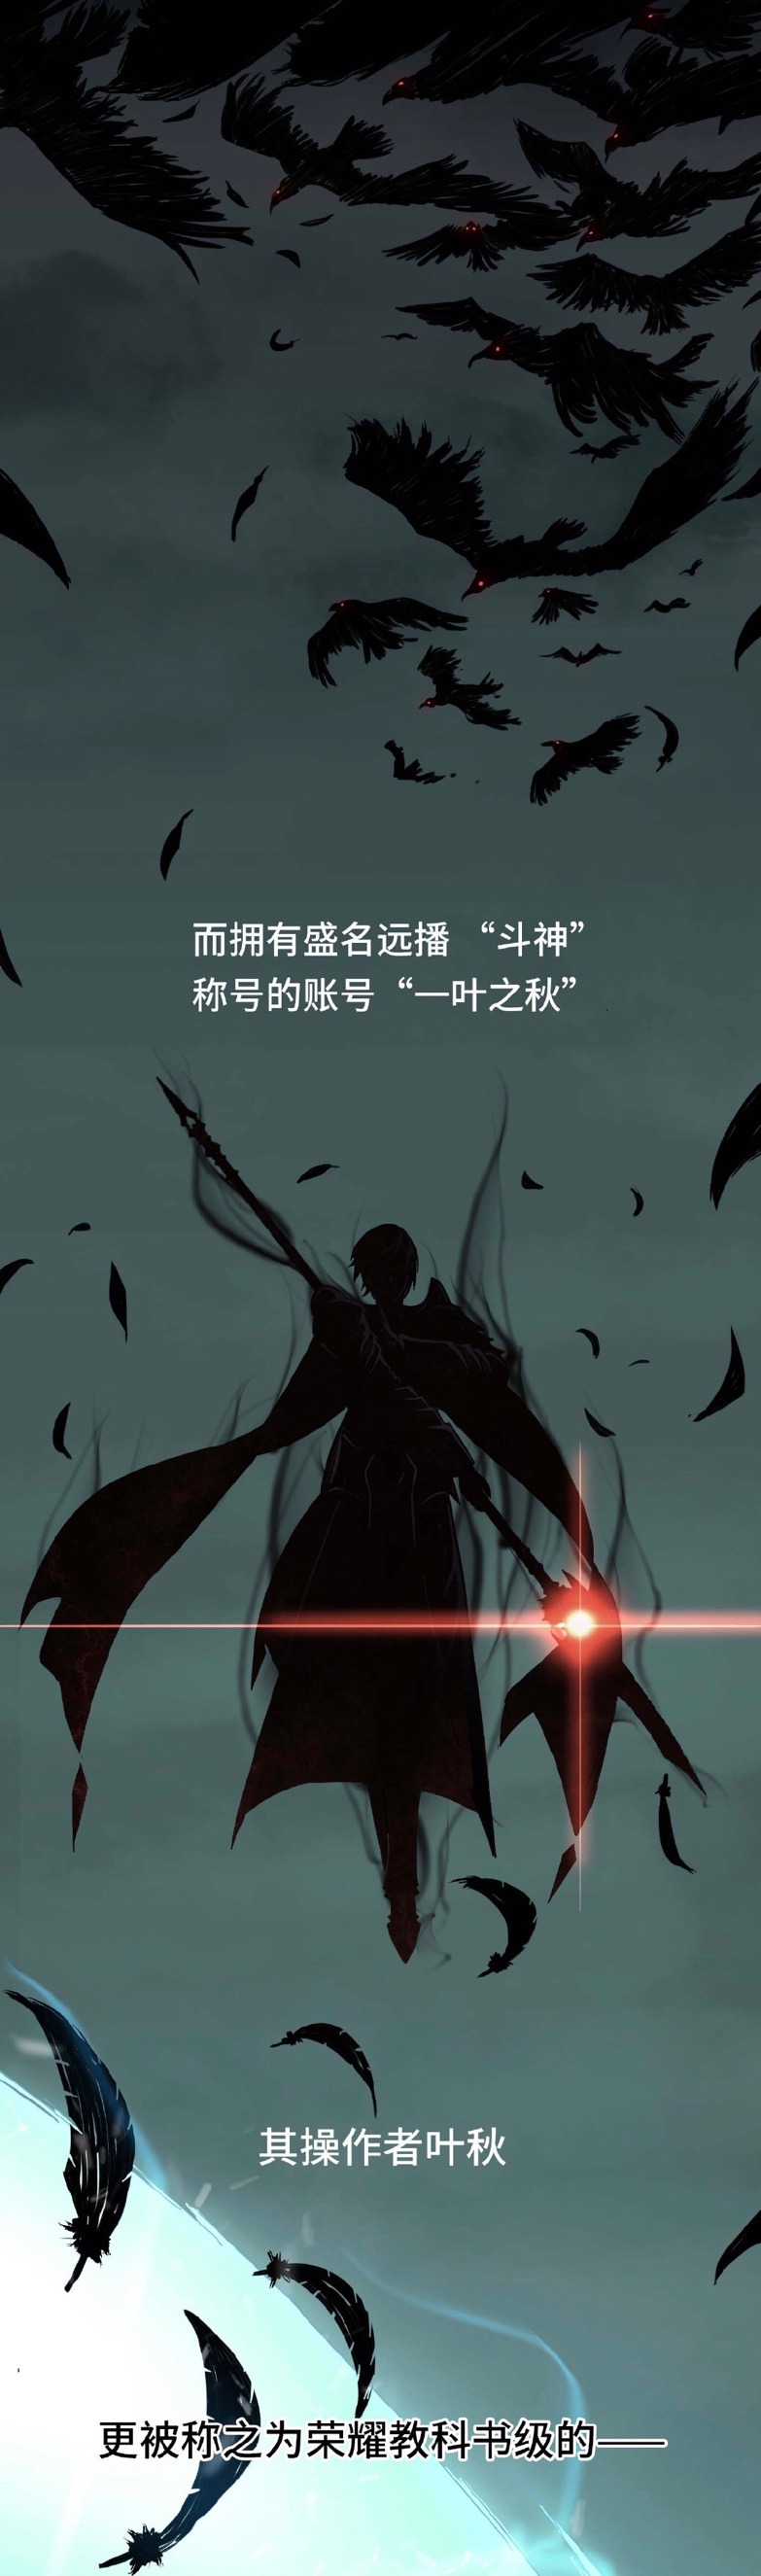 The King's Avatar Season 3 TRAILER PV, Quan Zhi Gao Shou